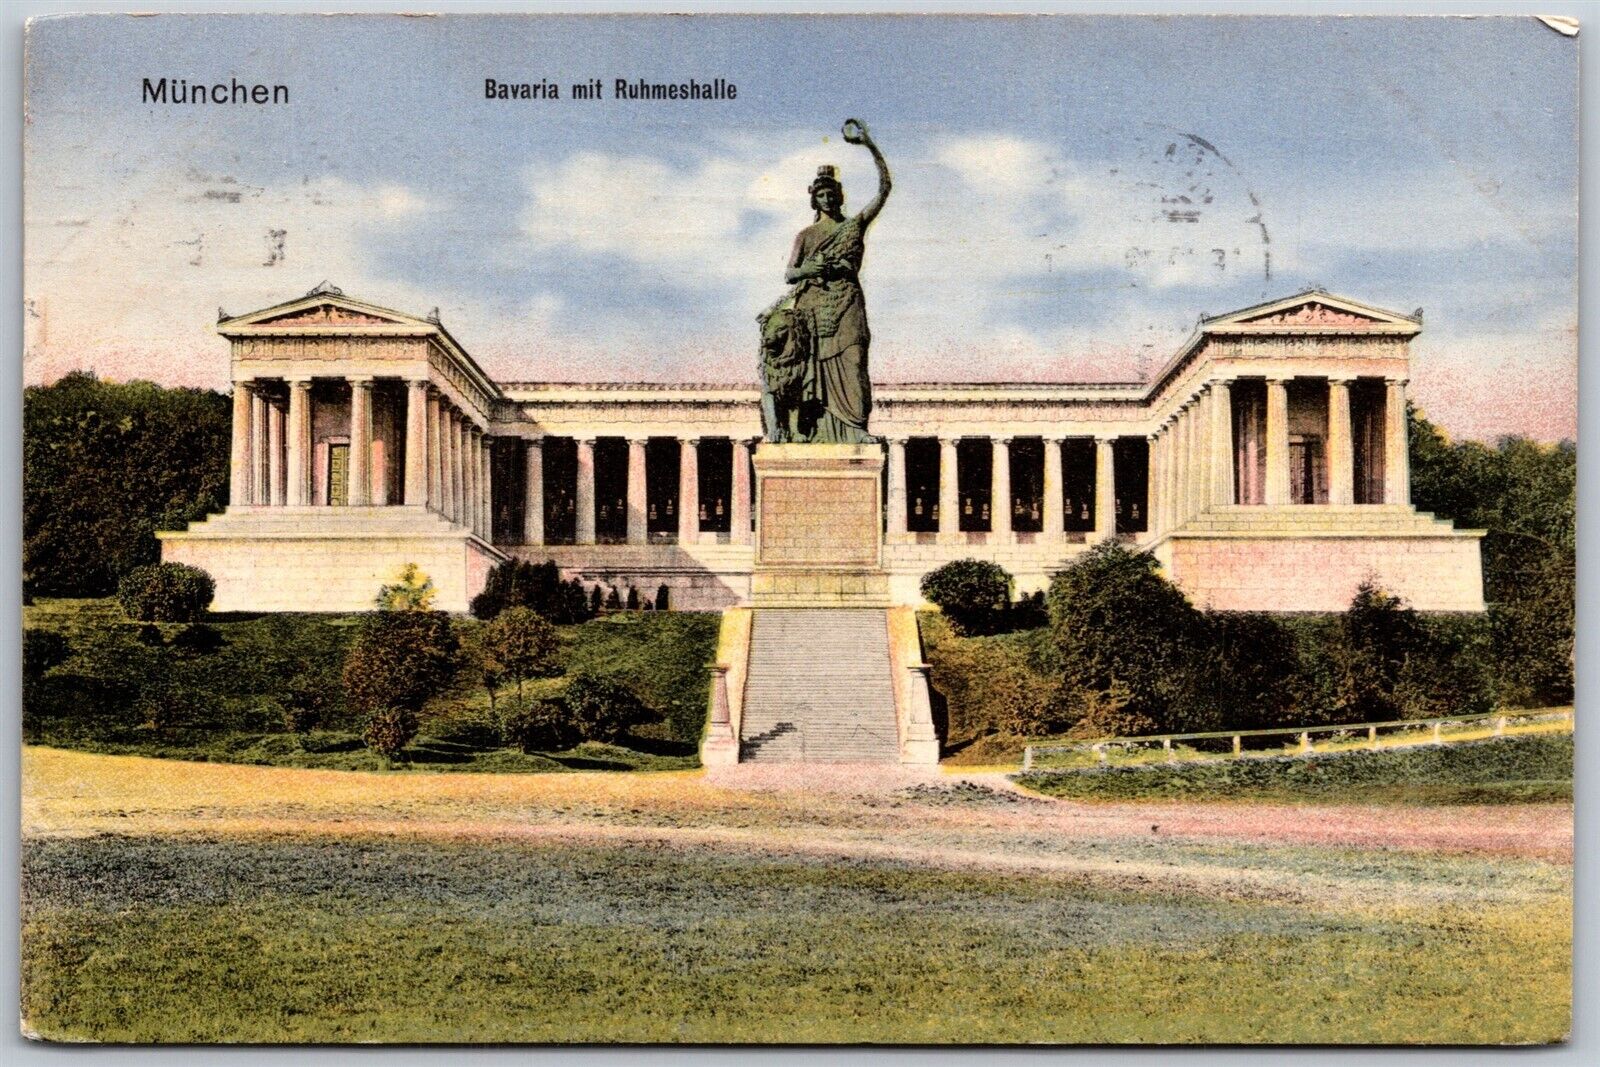 Vtg Munchen Bavaria mit Ruhmeshalle Hall Of Fame Statue Munich Germany Postcard